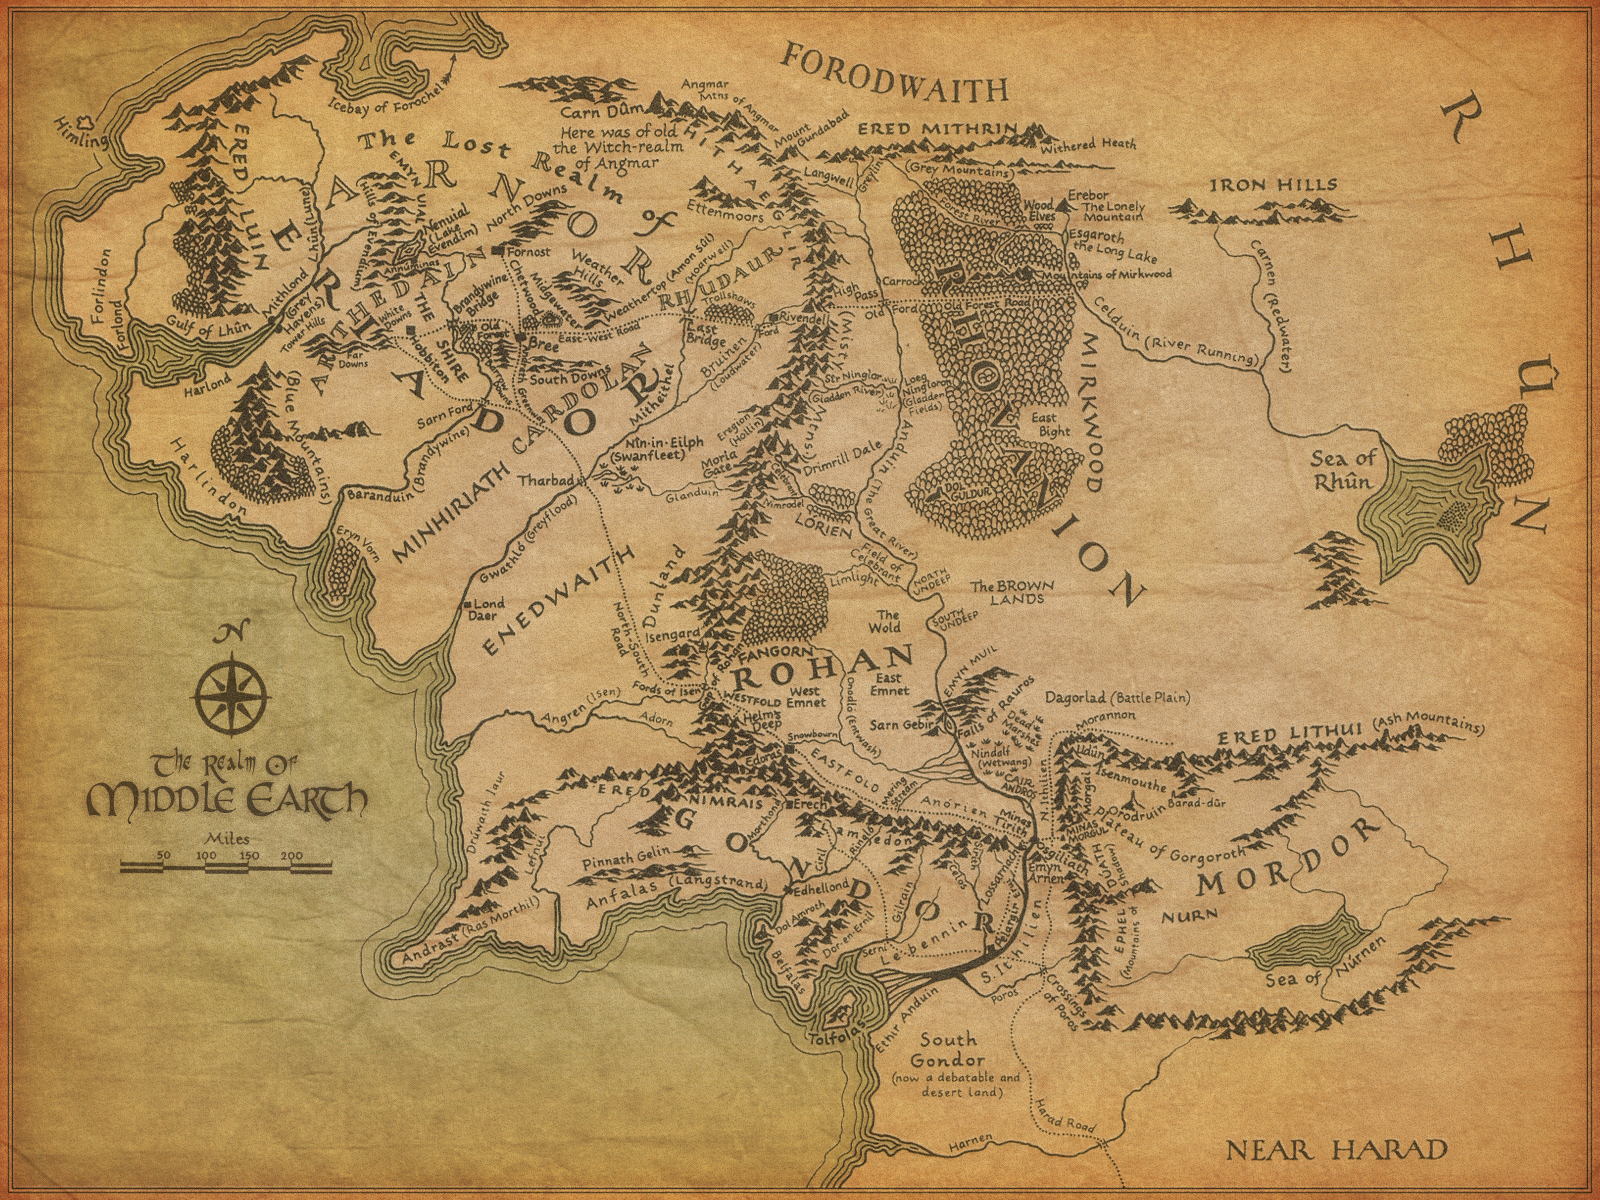 Mapa ilustrado de la Tierra Media señalado las locaciones con Mordor a la derecha hasta abajo, Rohan en medio, Gondor abajo y la comarca arriba a la izquierda